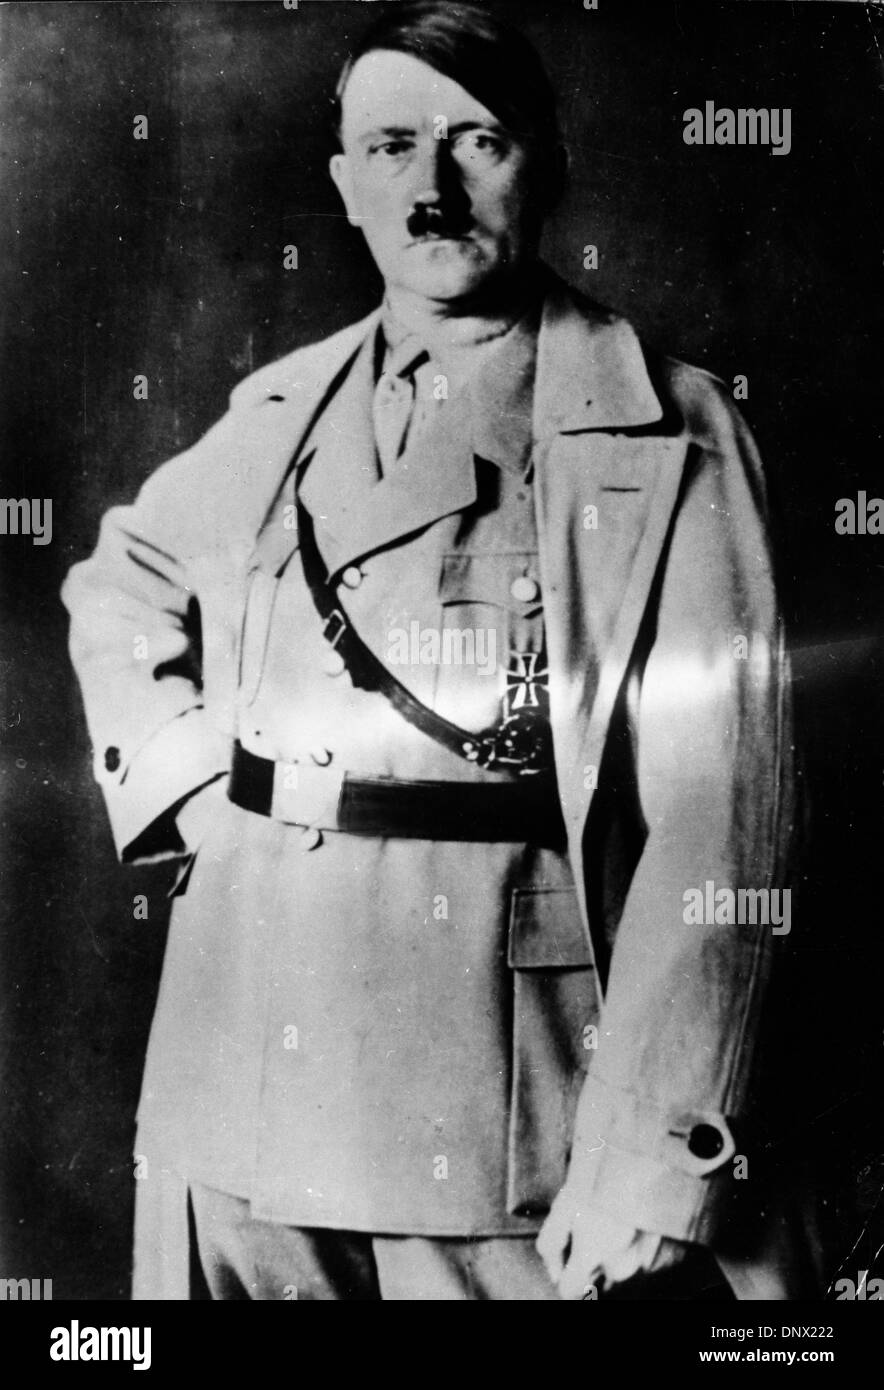 11 avril 1939 - Berlin, Allemagne - Adolf Hitler (20 avril 1889 - 30 avril, 1945) était le Führer und Reichskanzler (chancelier) et leader de l'Allemagne de 1933 à sa mort. Il était chef du parti national-socialiste des travailleurs allemands (NSDAP), mieux connu sous le nom de Parti nazi. (Crédit Image : © Keystone Photos USA/ZUMAPRESS.com) Banque D'Images